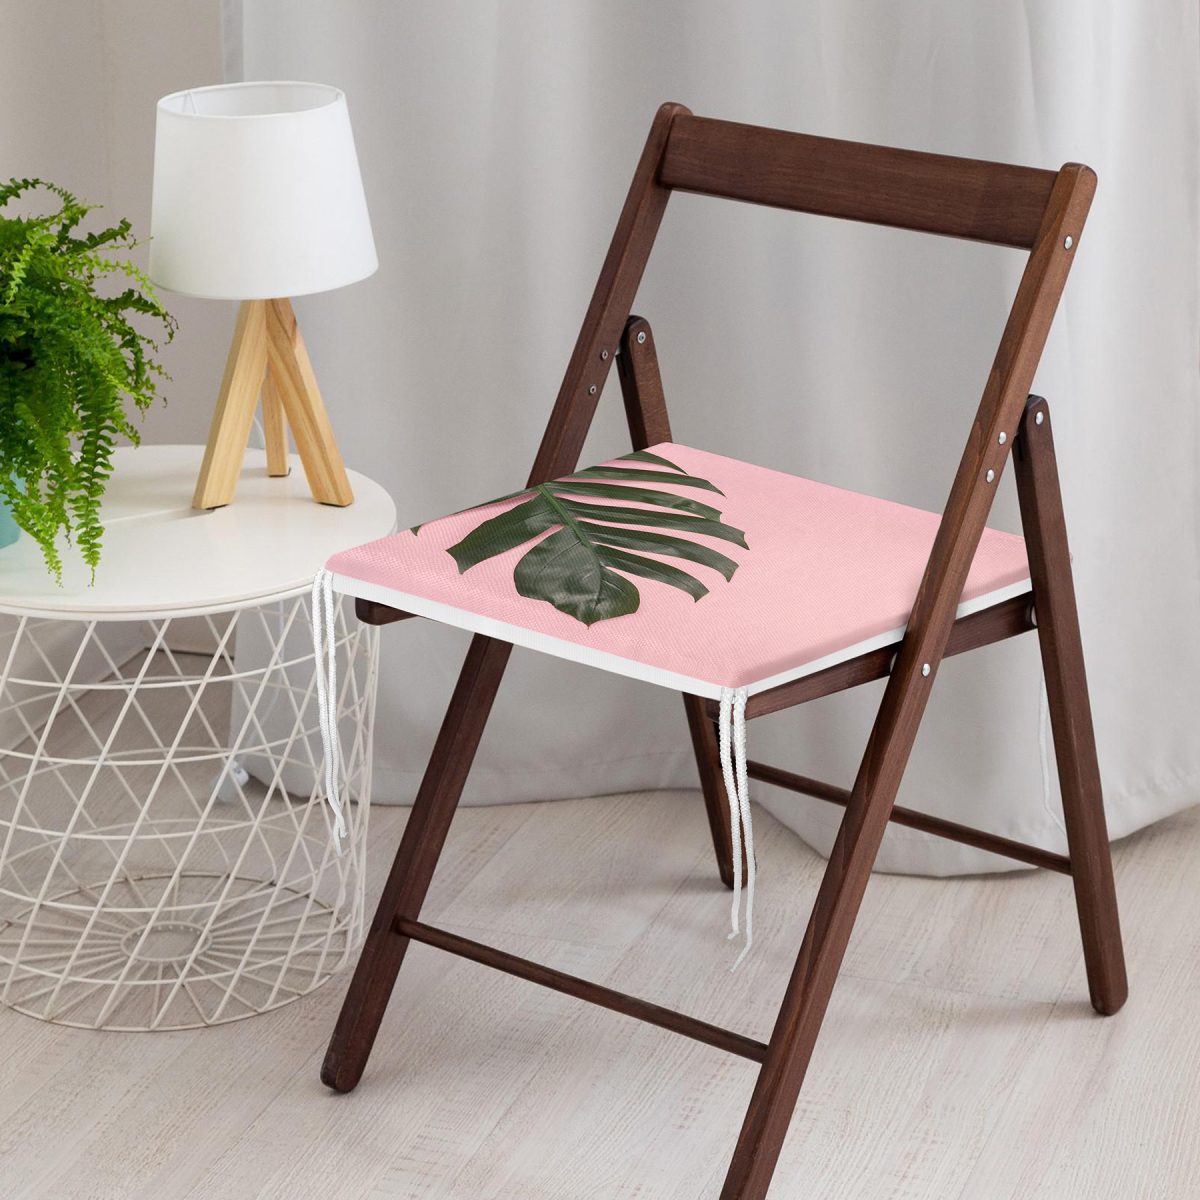 Pembe Zeminde Yaprak Modern Tasarımlı Dekoratif Fermuarlı Sandalye Minderi Realhomes